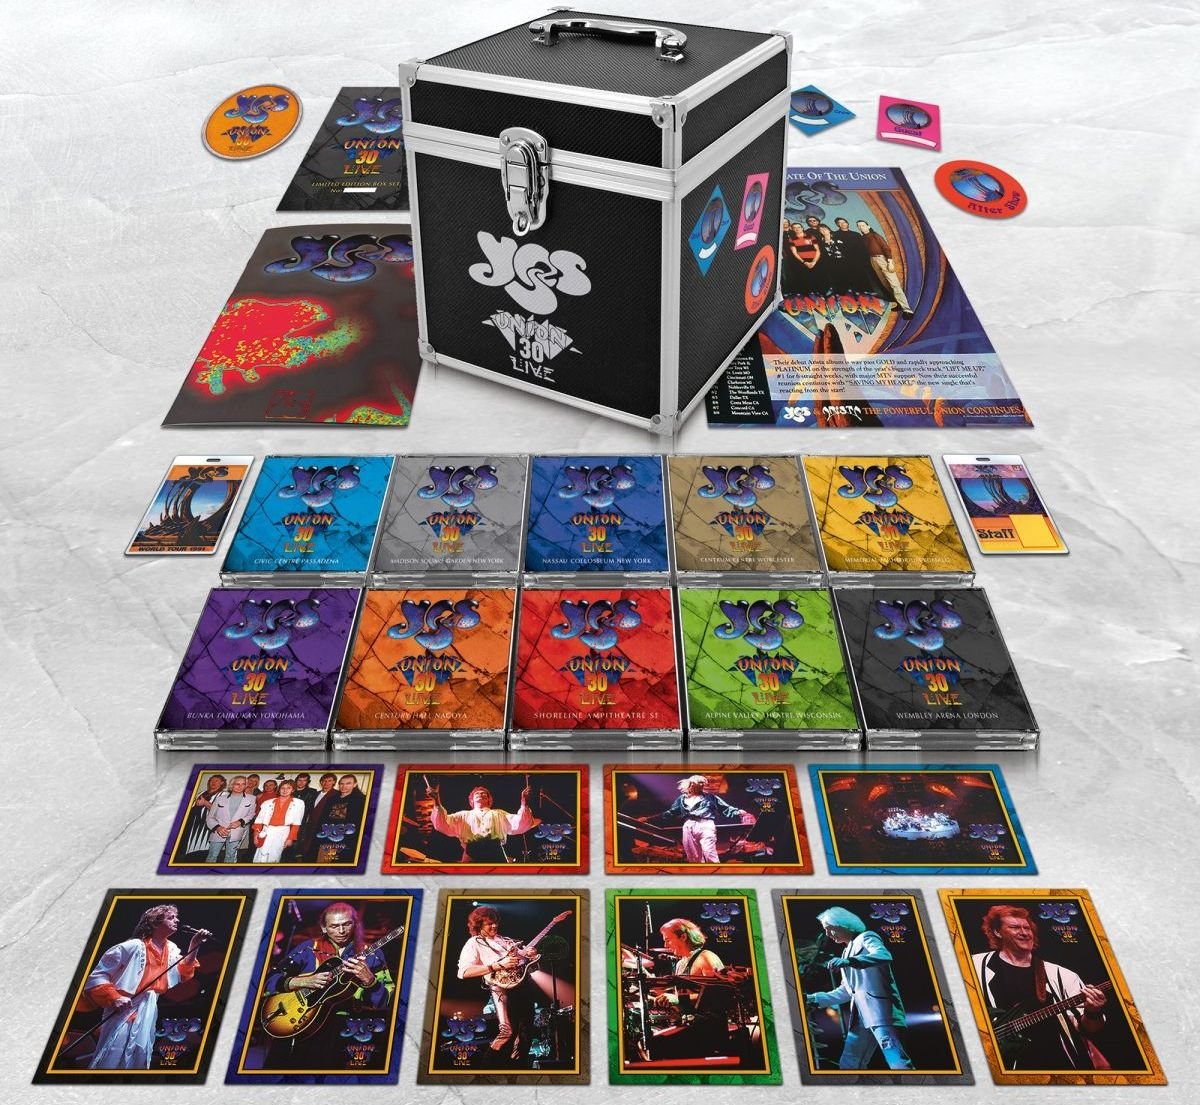 Gli Yes celebrano con un box da 30 cd il 30° anniversario dell’Union Tour